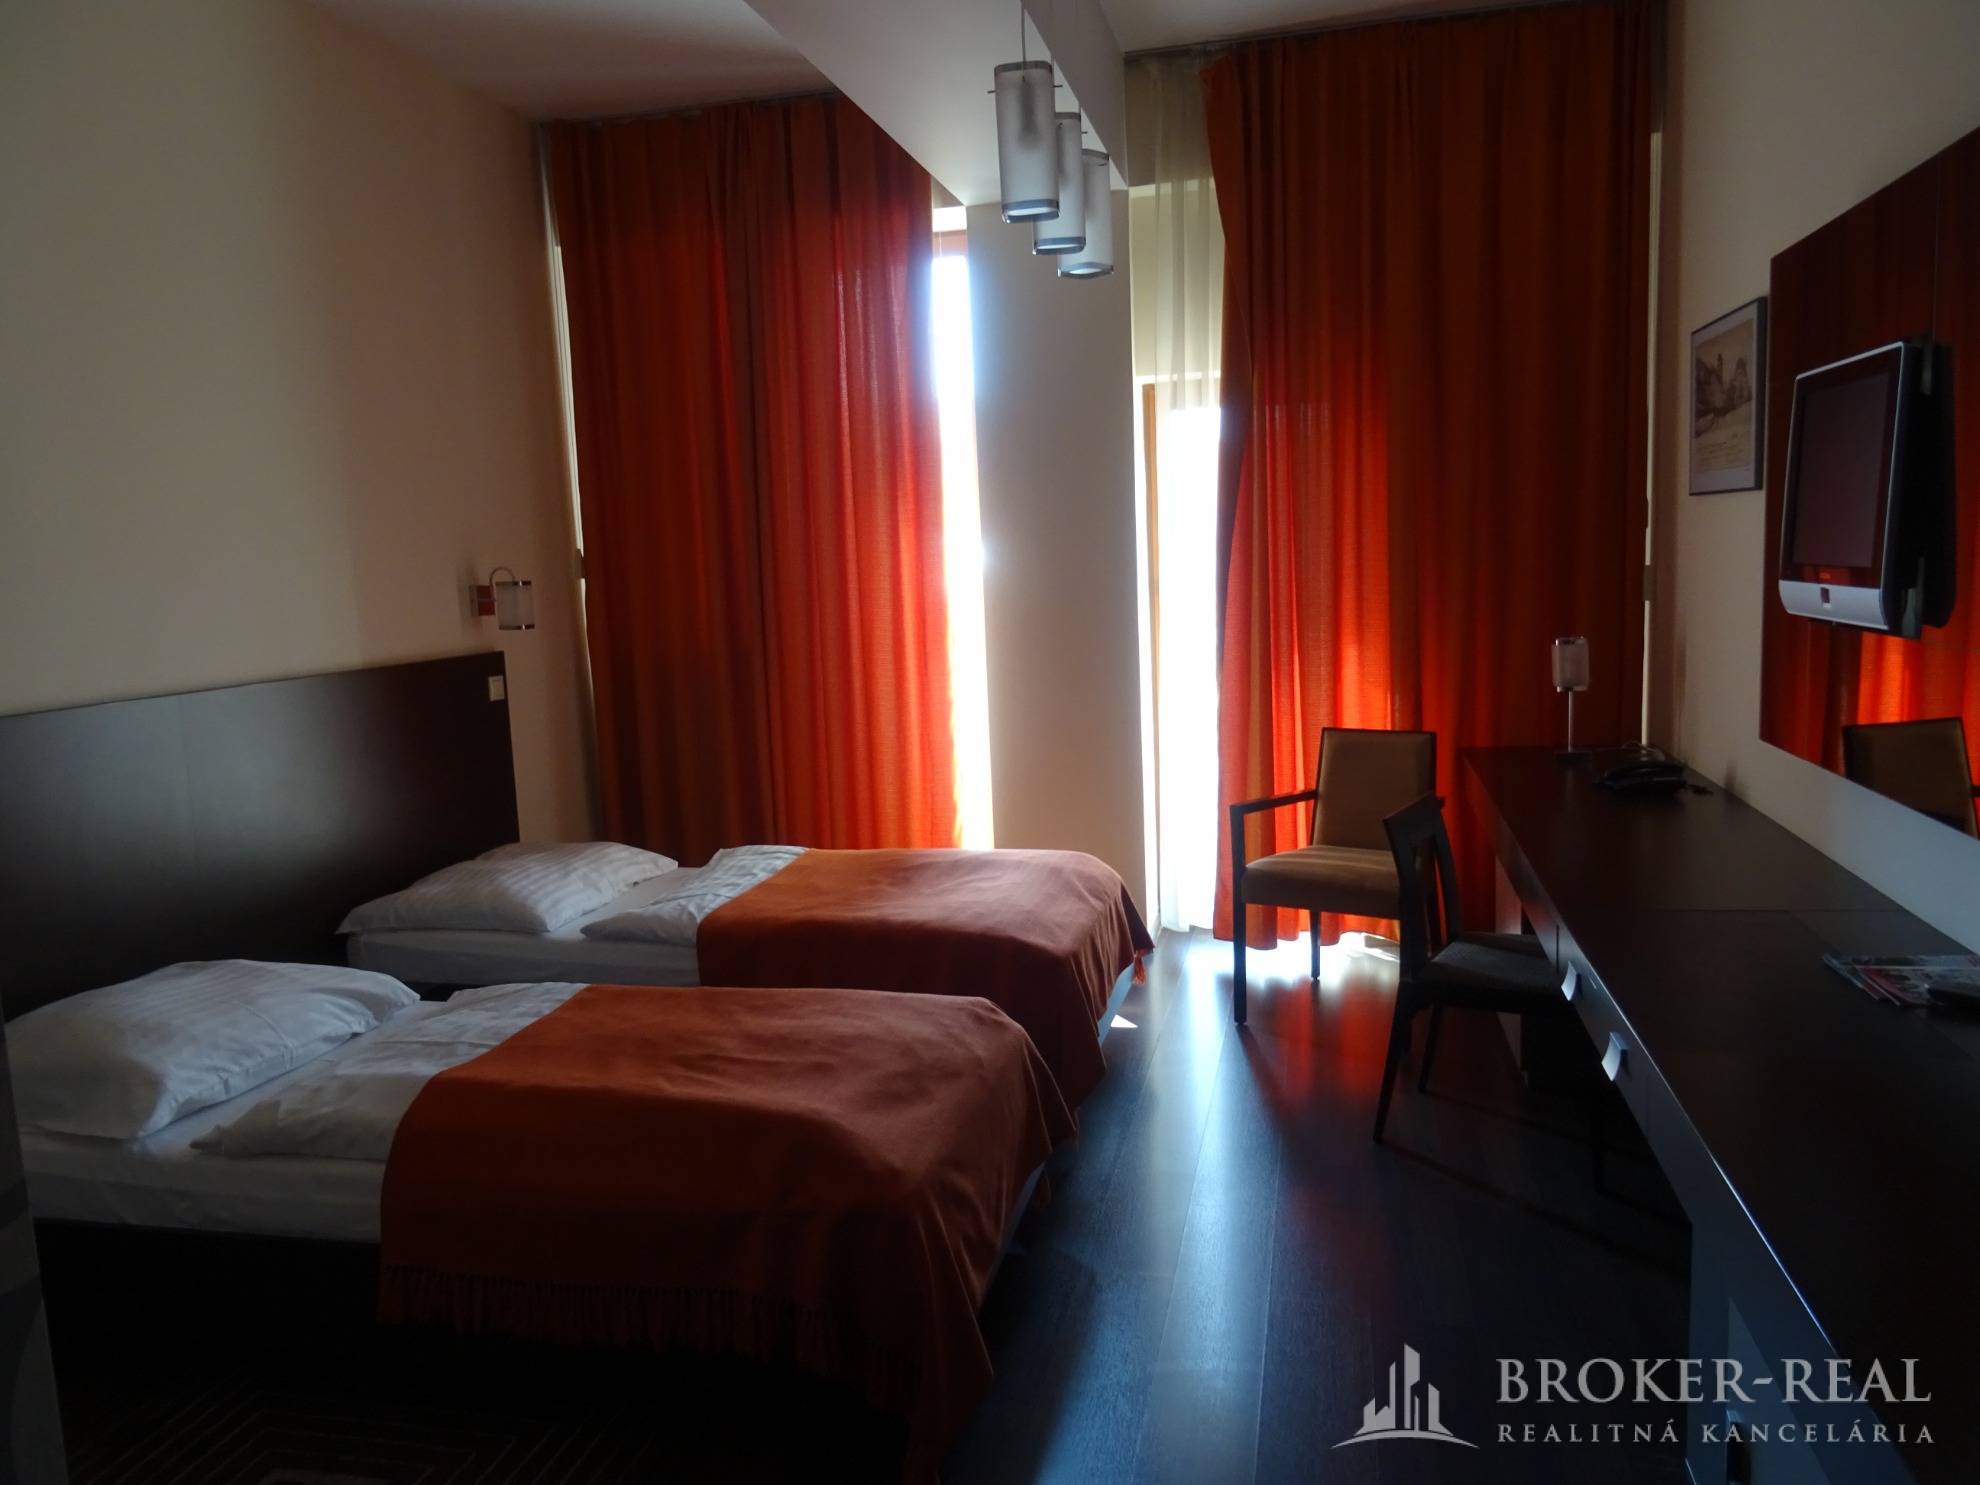 1 - izbový byt hotelového typu, Košice - centrum